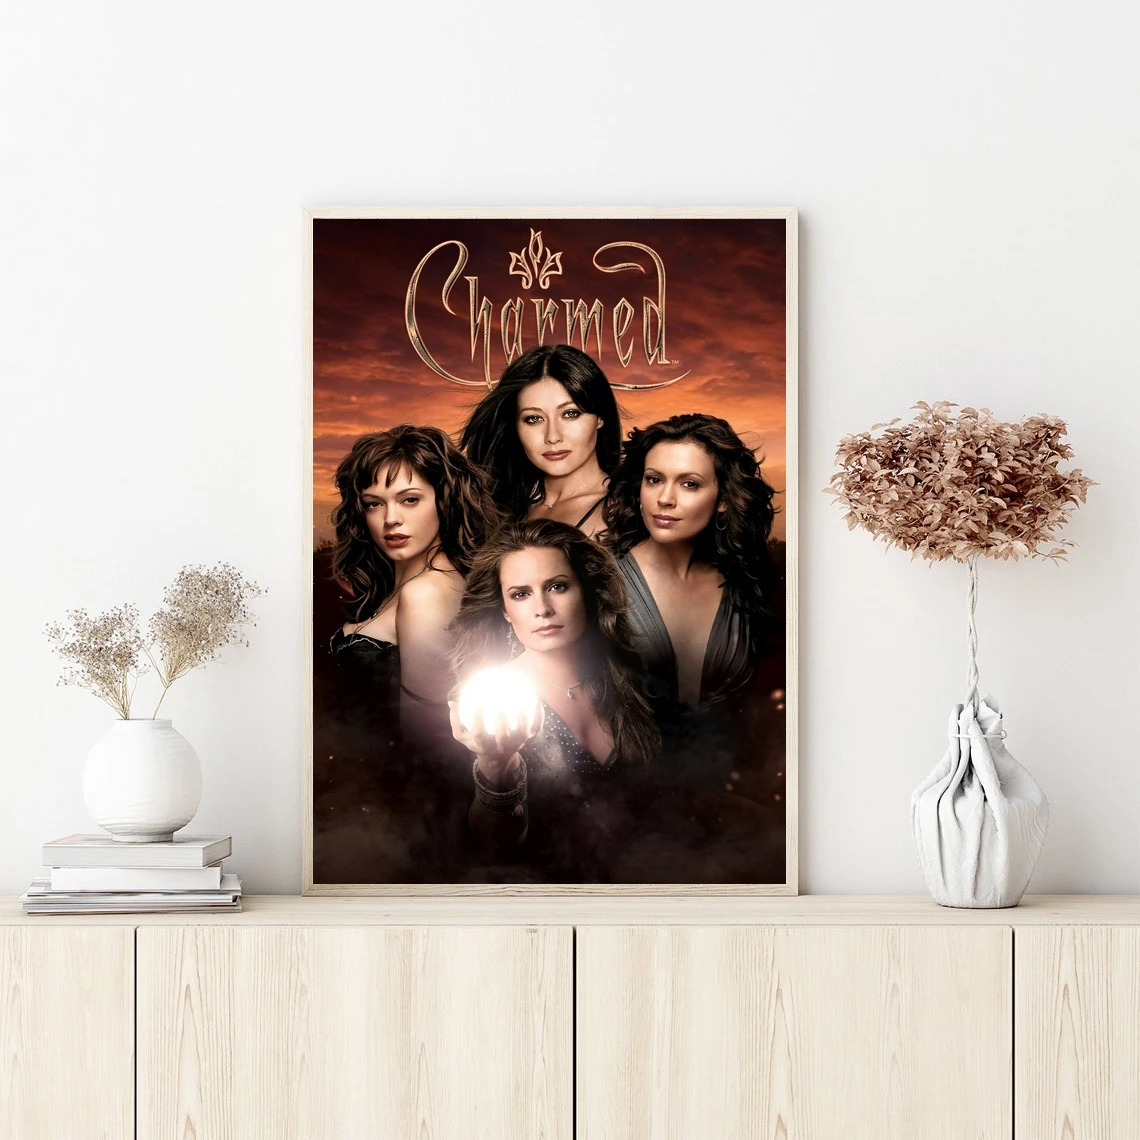 Обложка фильма серии Charmed Плакат Настенное искусство Холст Картина Спальня гостиная Украшение дома (без рамки)